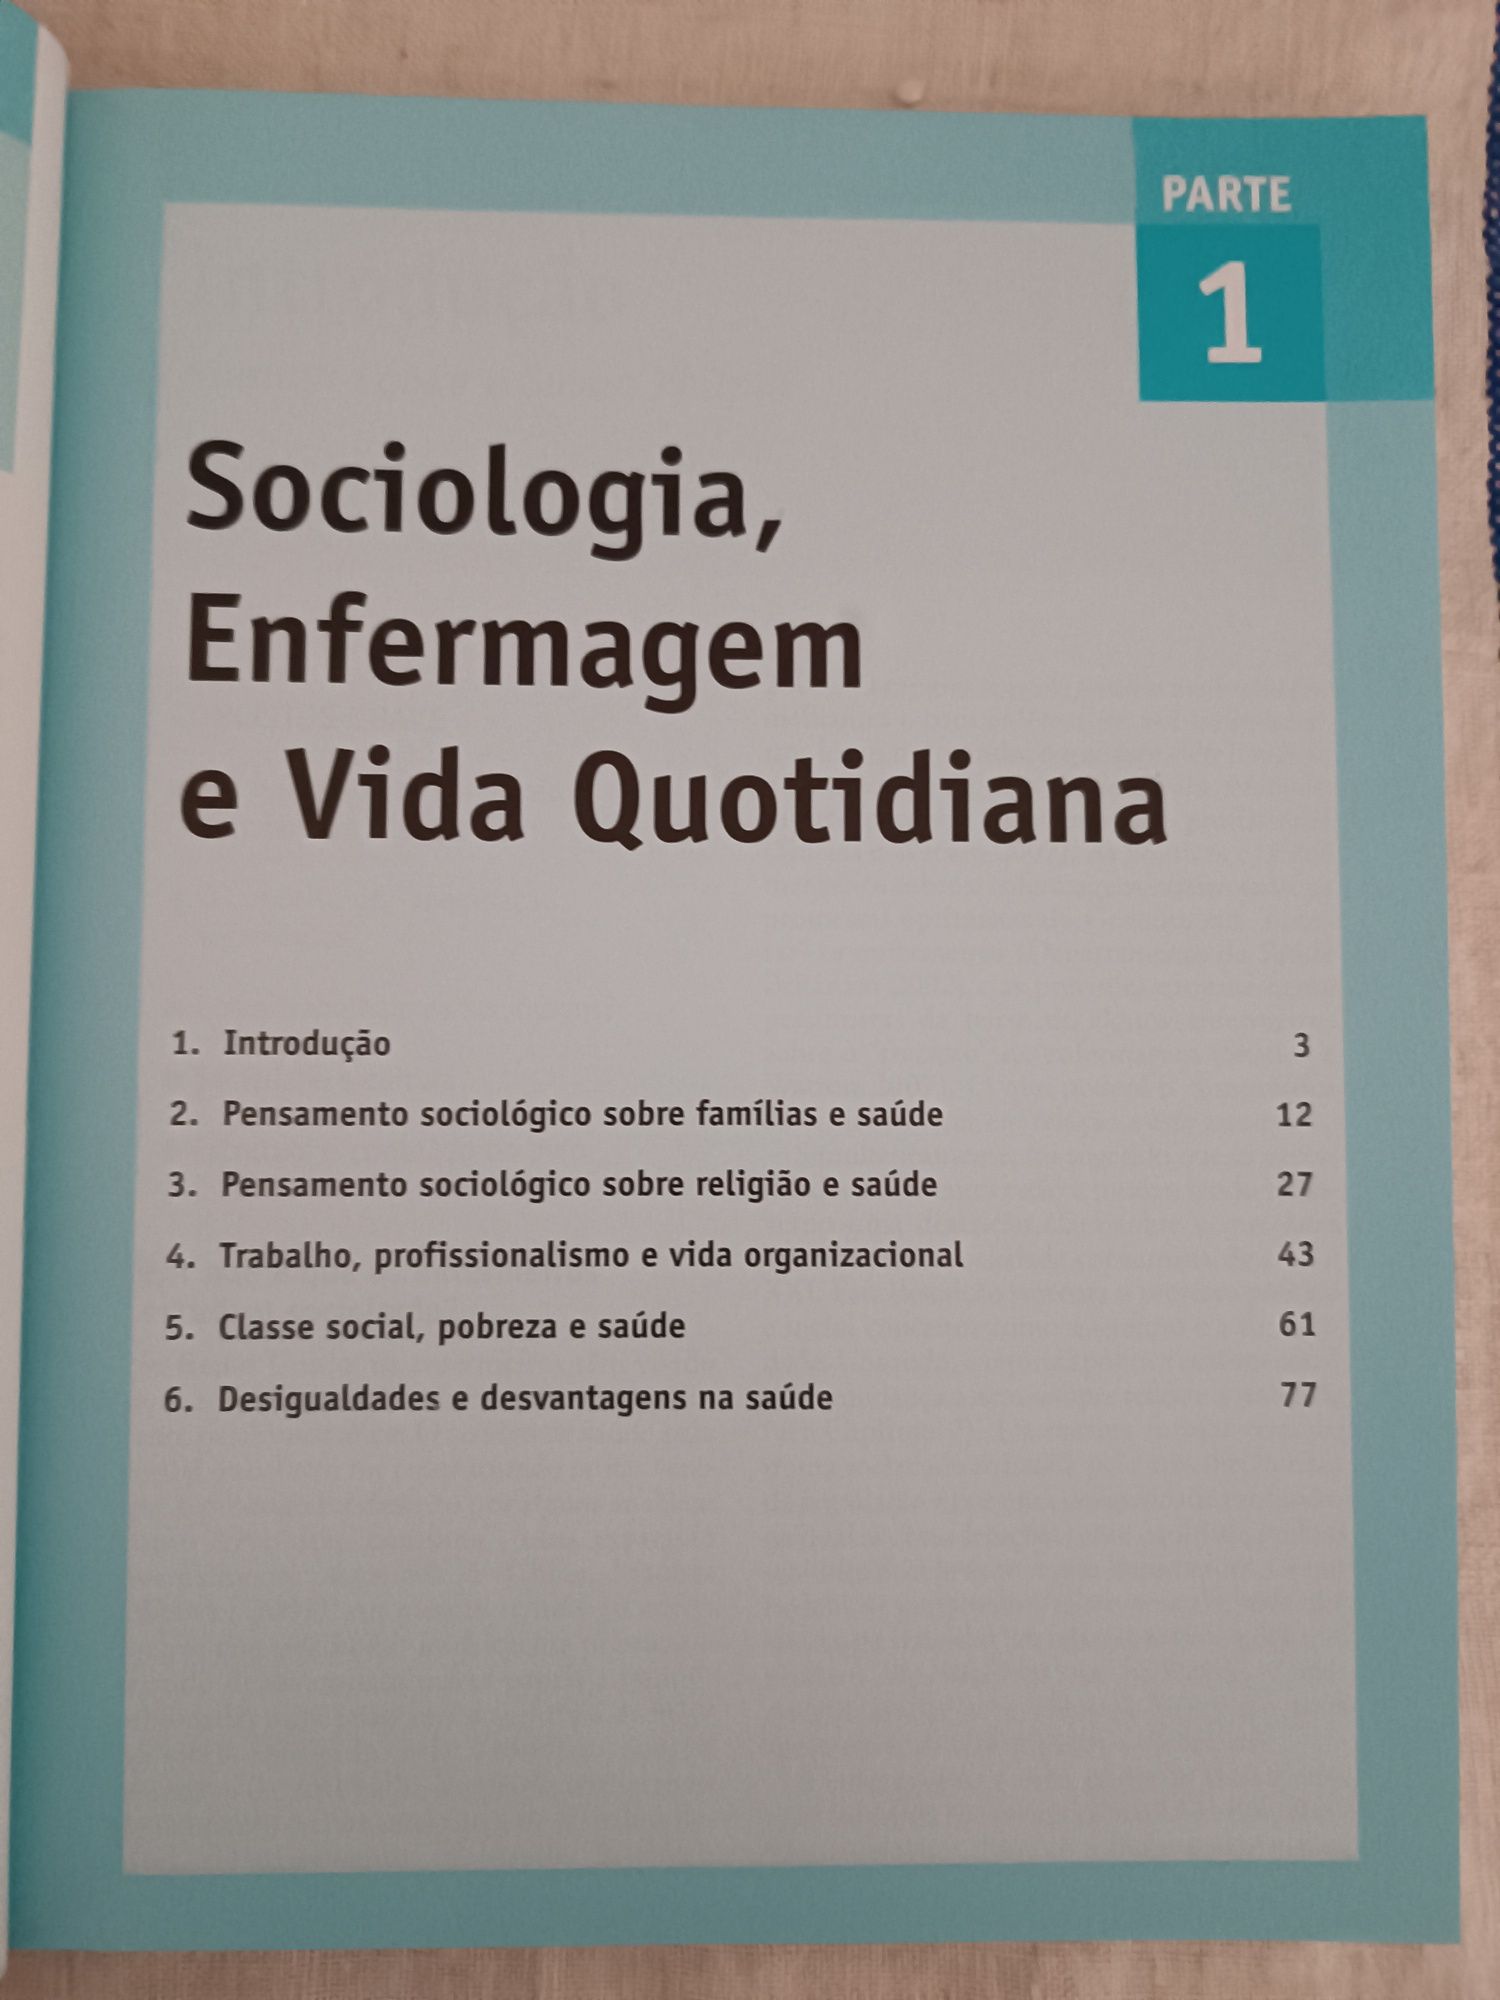 Livro "Sociologia em Enfermagem e Cuidados de Saúde"